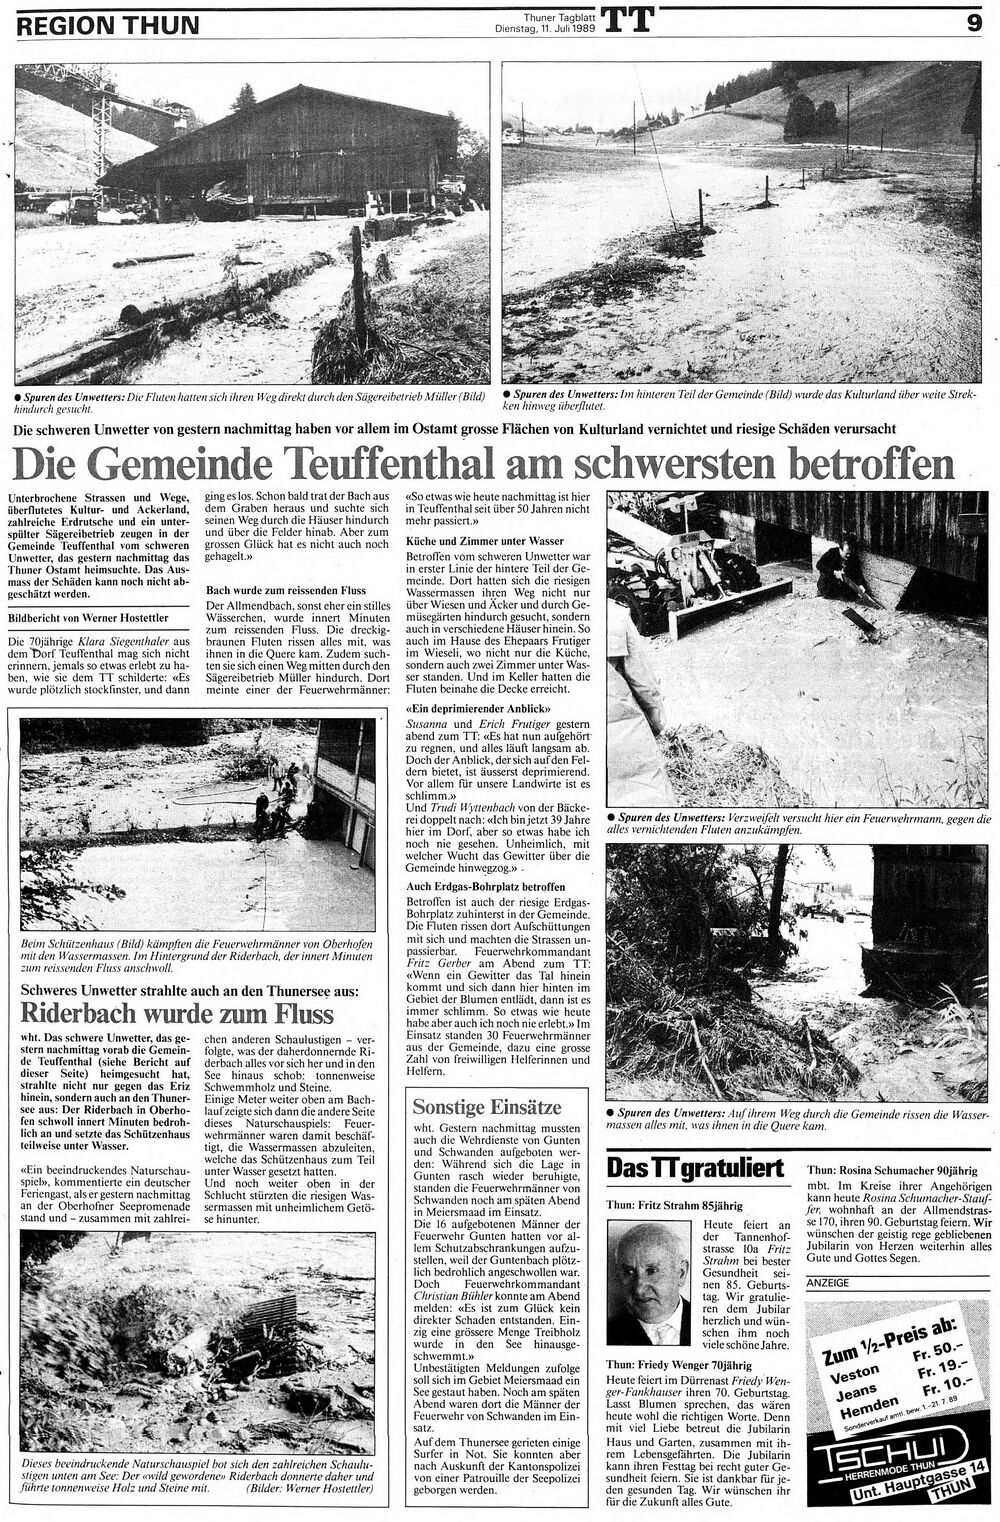 19890710 01 Flood Teuffenthal BE 19890710 01 Flood Teuffenthal BE Thuner Tagblatt 11.07.89 02.jpg